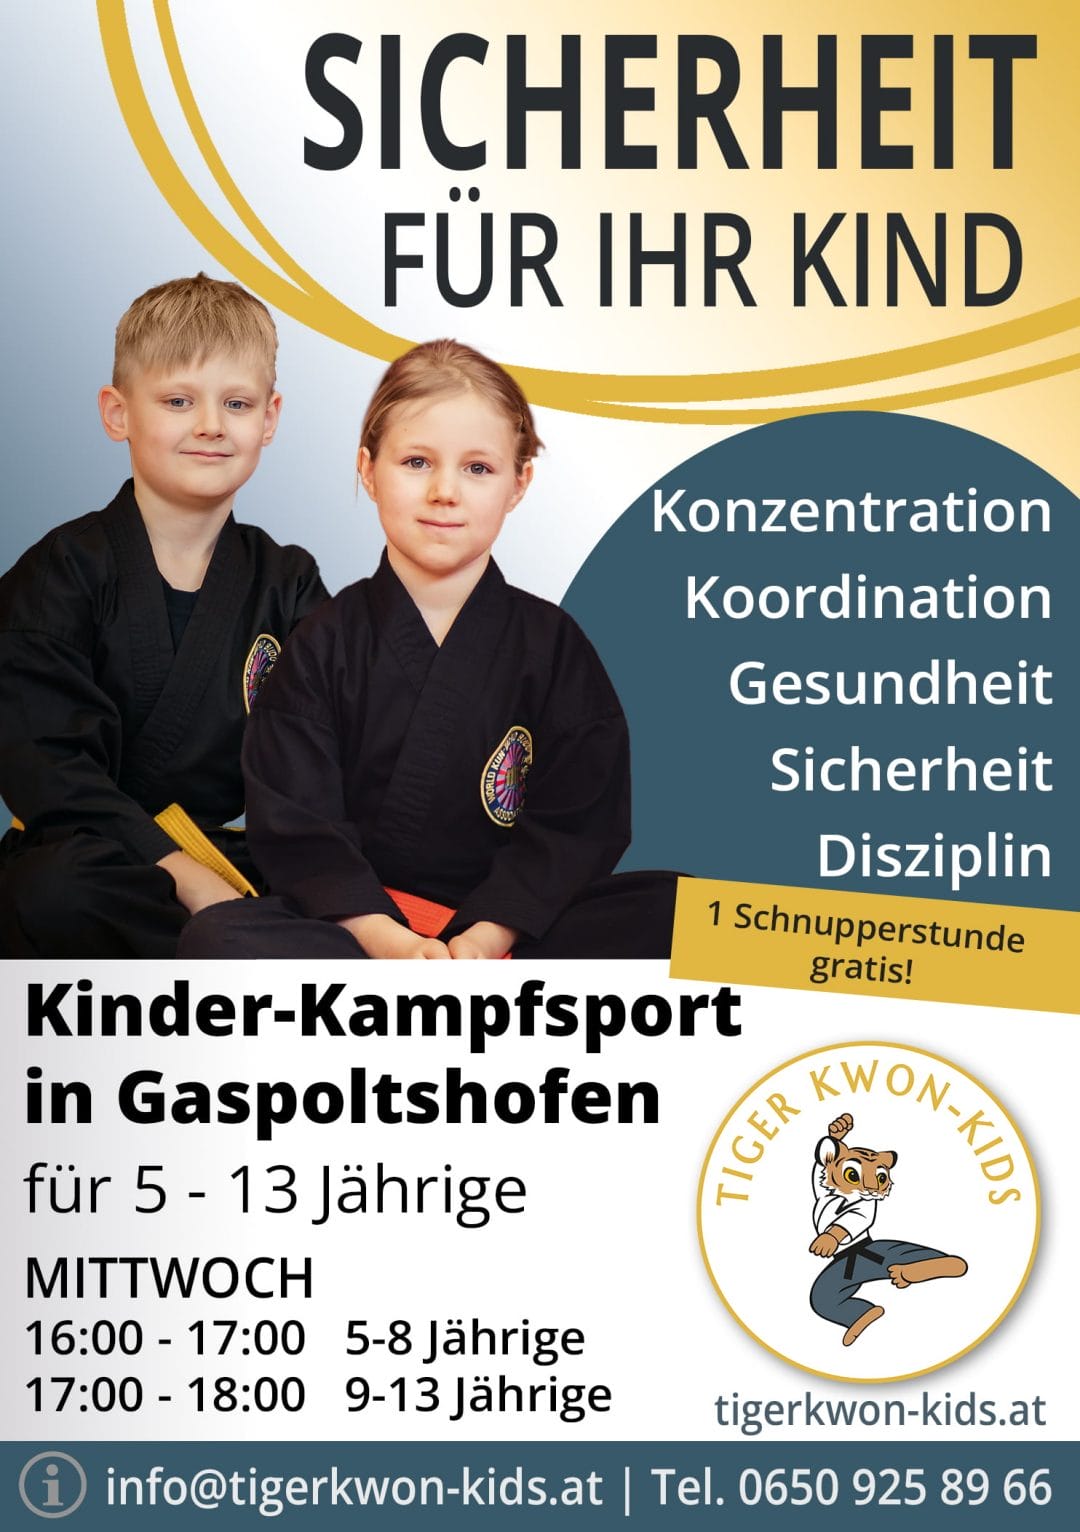 Flyer des Tiger Kwon - Kids Standorts in Gaspoltshofen mit Informationen zu Trainingsort und -zeit, illustriert durch fröhliche Jungen und Mädchen.